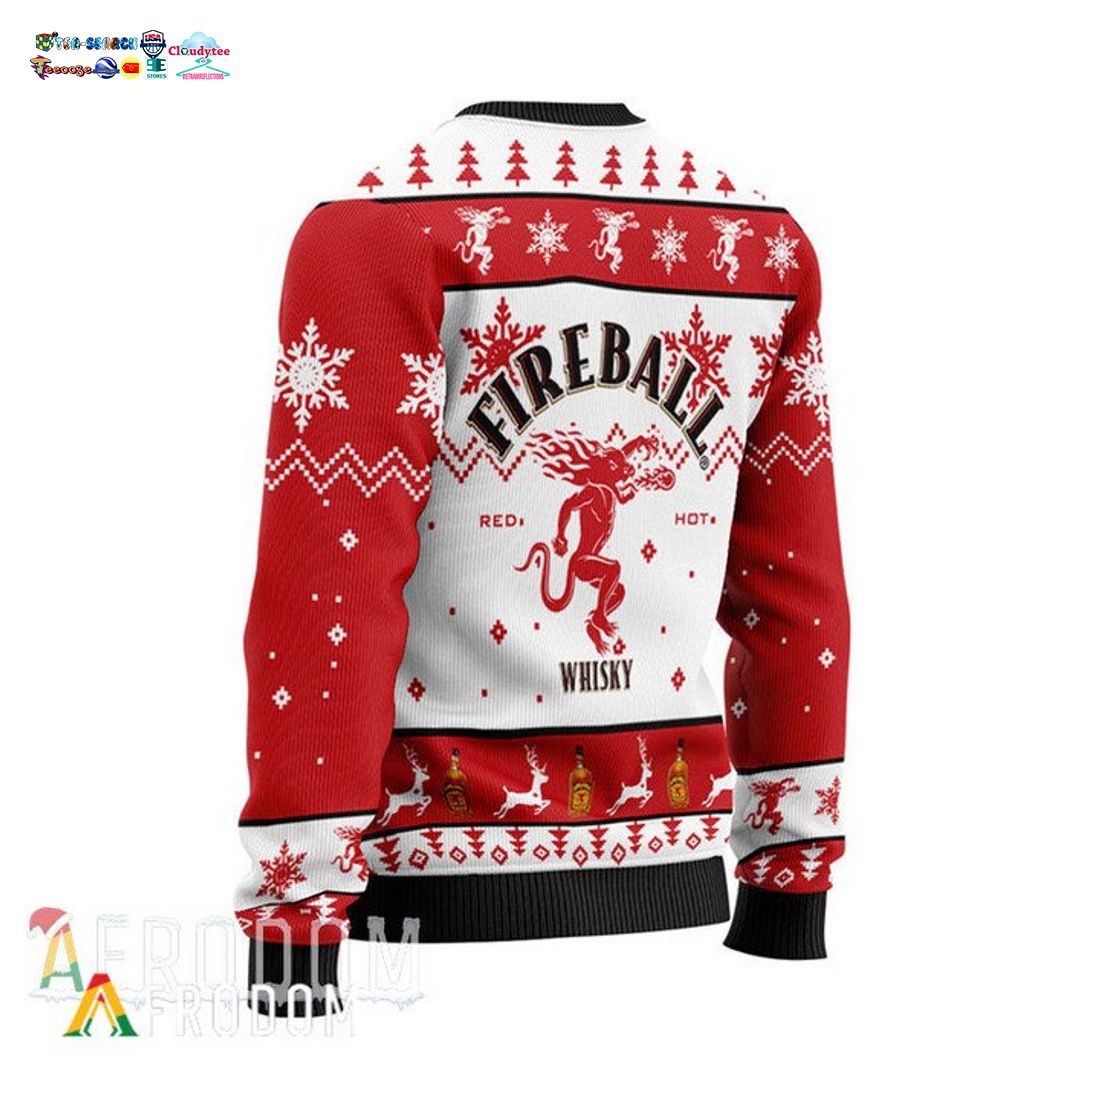 Fireball Ver 3 Ugly Christmas Sweater